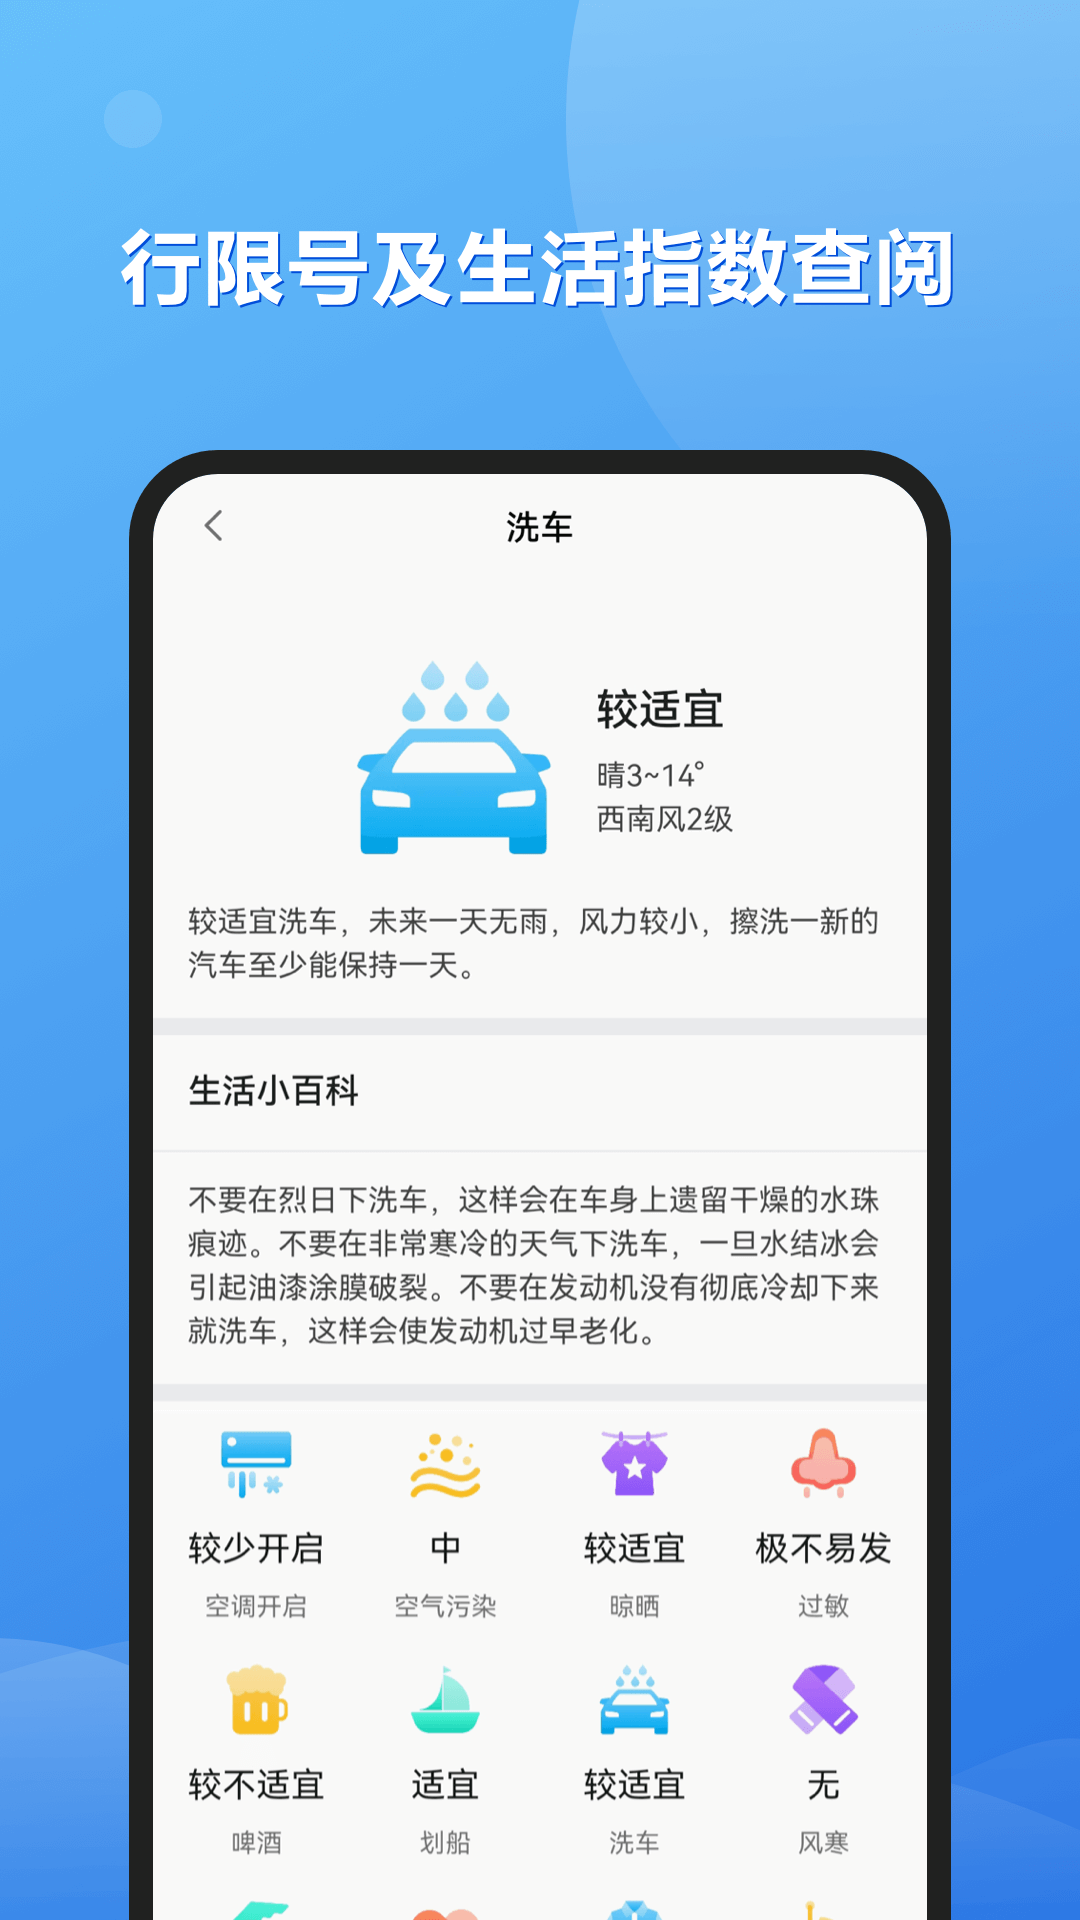 和景天气九江app后台开发